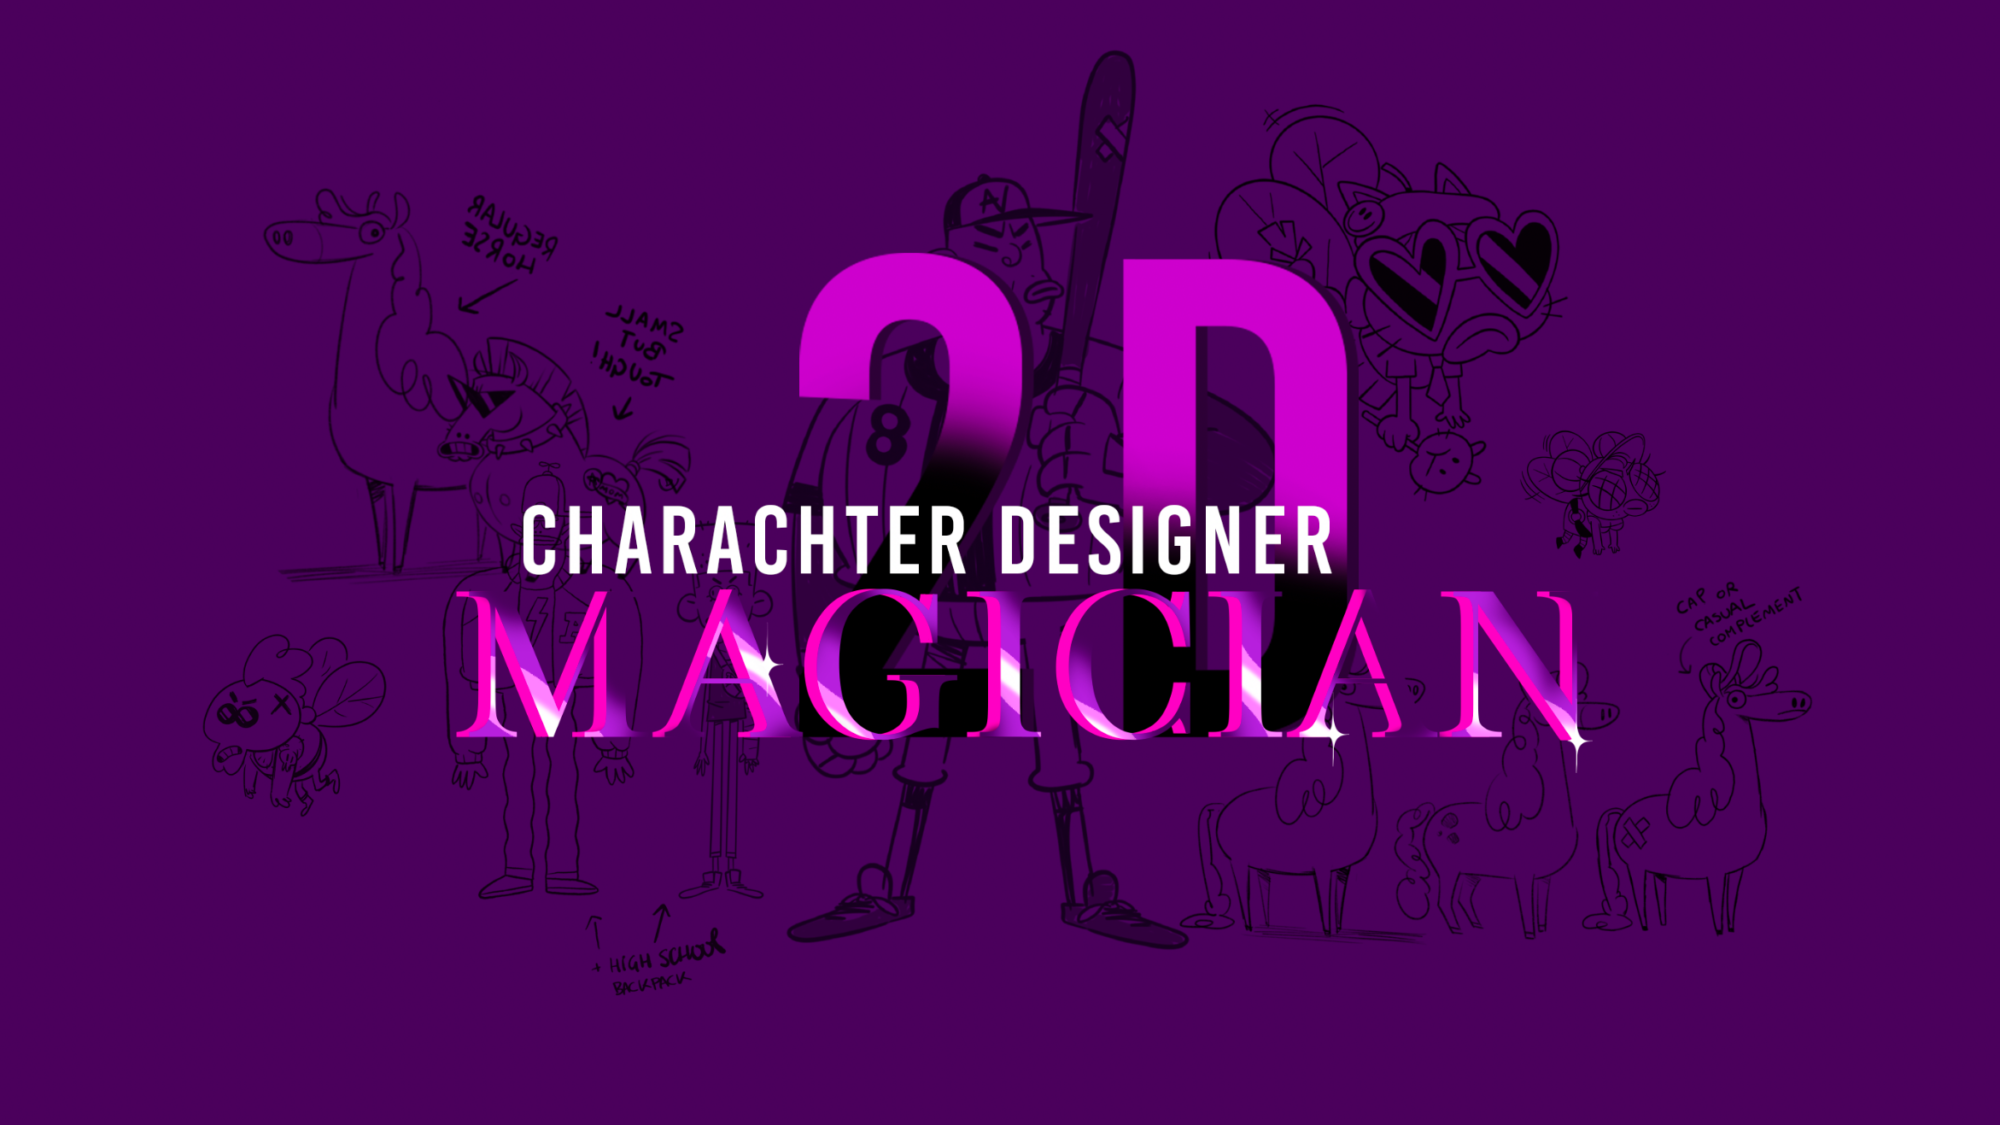 2D Character Design Magician